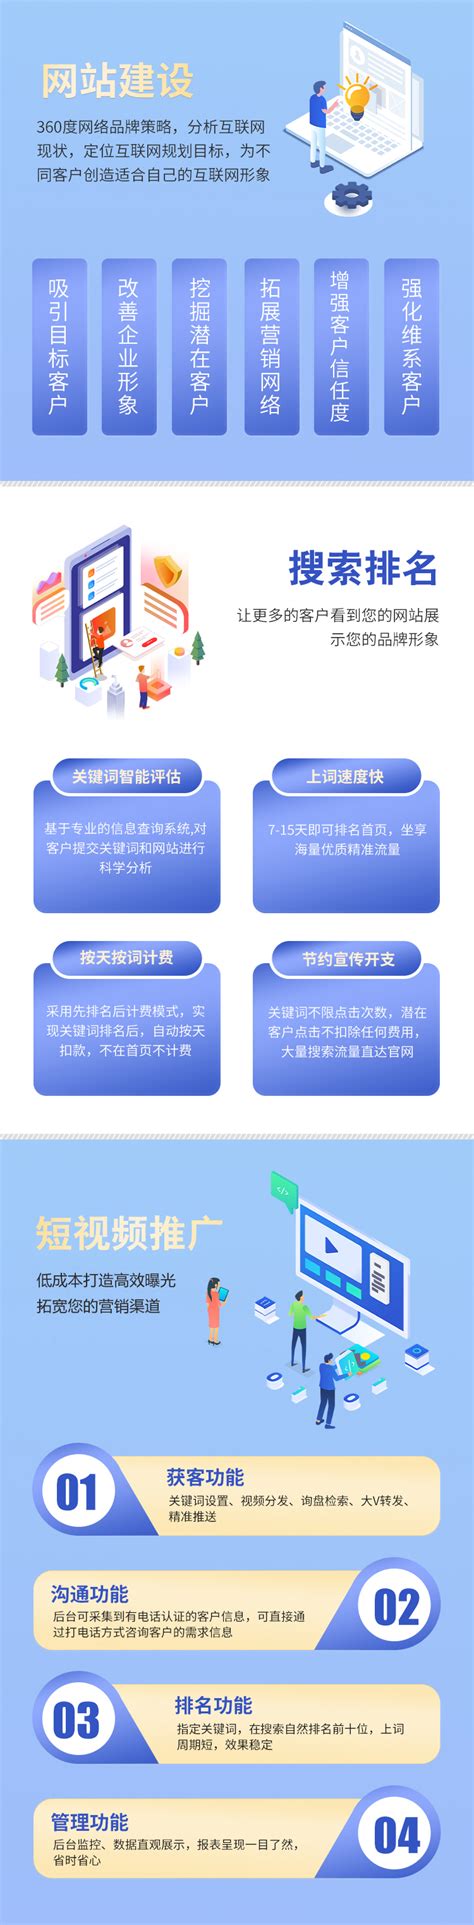 重庆网站建设思路